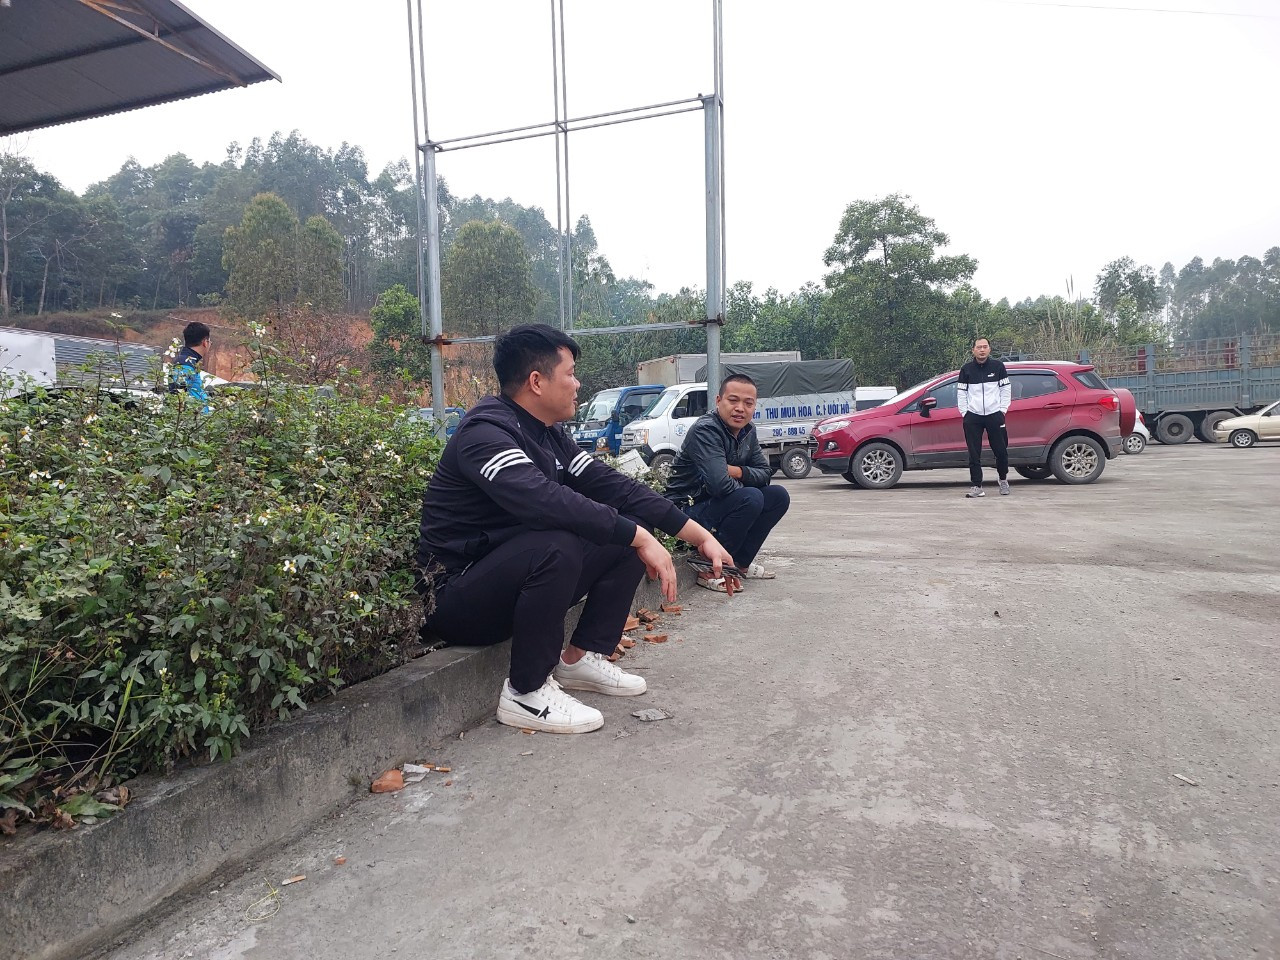 Khi đến Phú Thọ đăng kiểm, mọi người cũng phải xếp hàng chờ đợi vài tiếng đồng hồ.